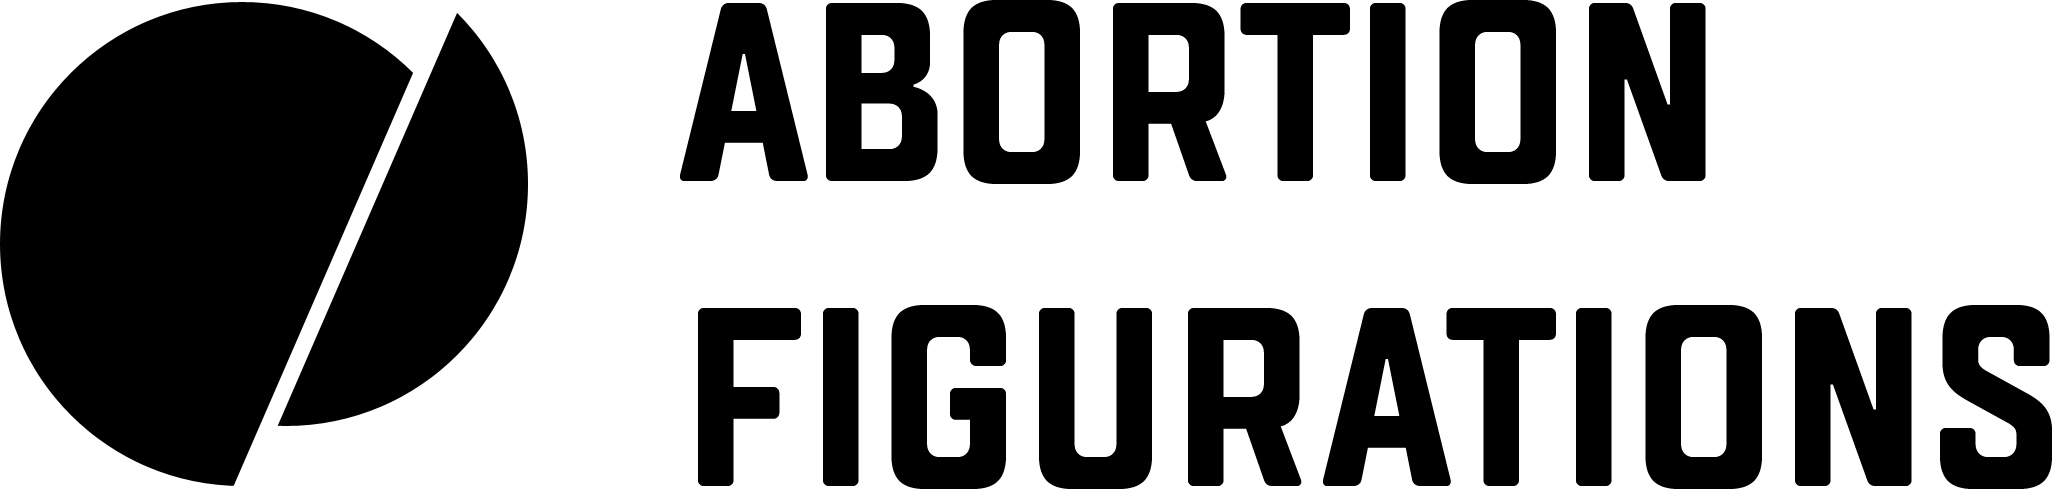 Abortion Figurations: Wykorzystanie praw człowieka do zmiany prawa aborcyjnego: wzorce zaangażowania i figury argumentacyjne w globalnej figuracji praw człowieka